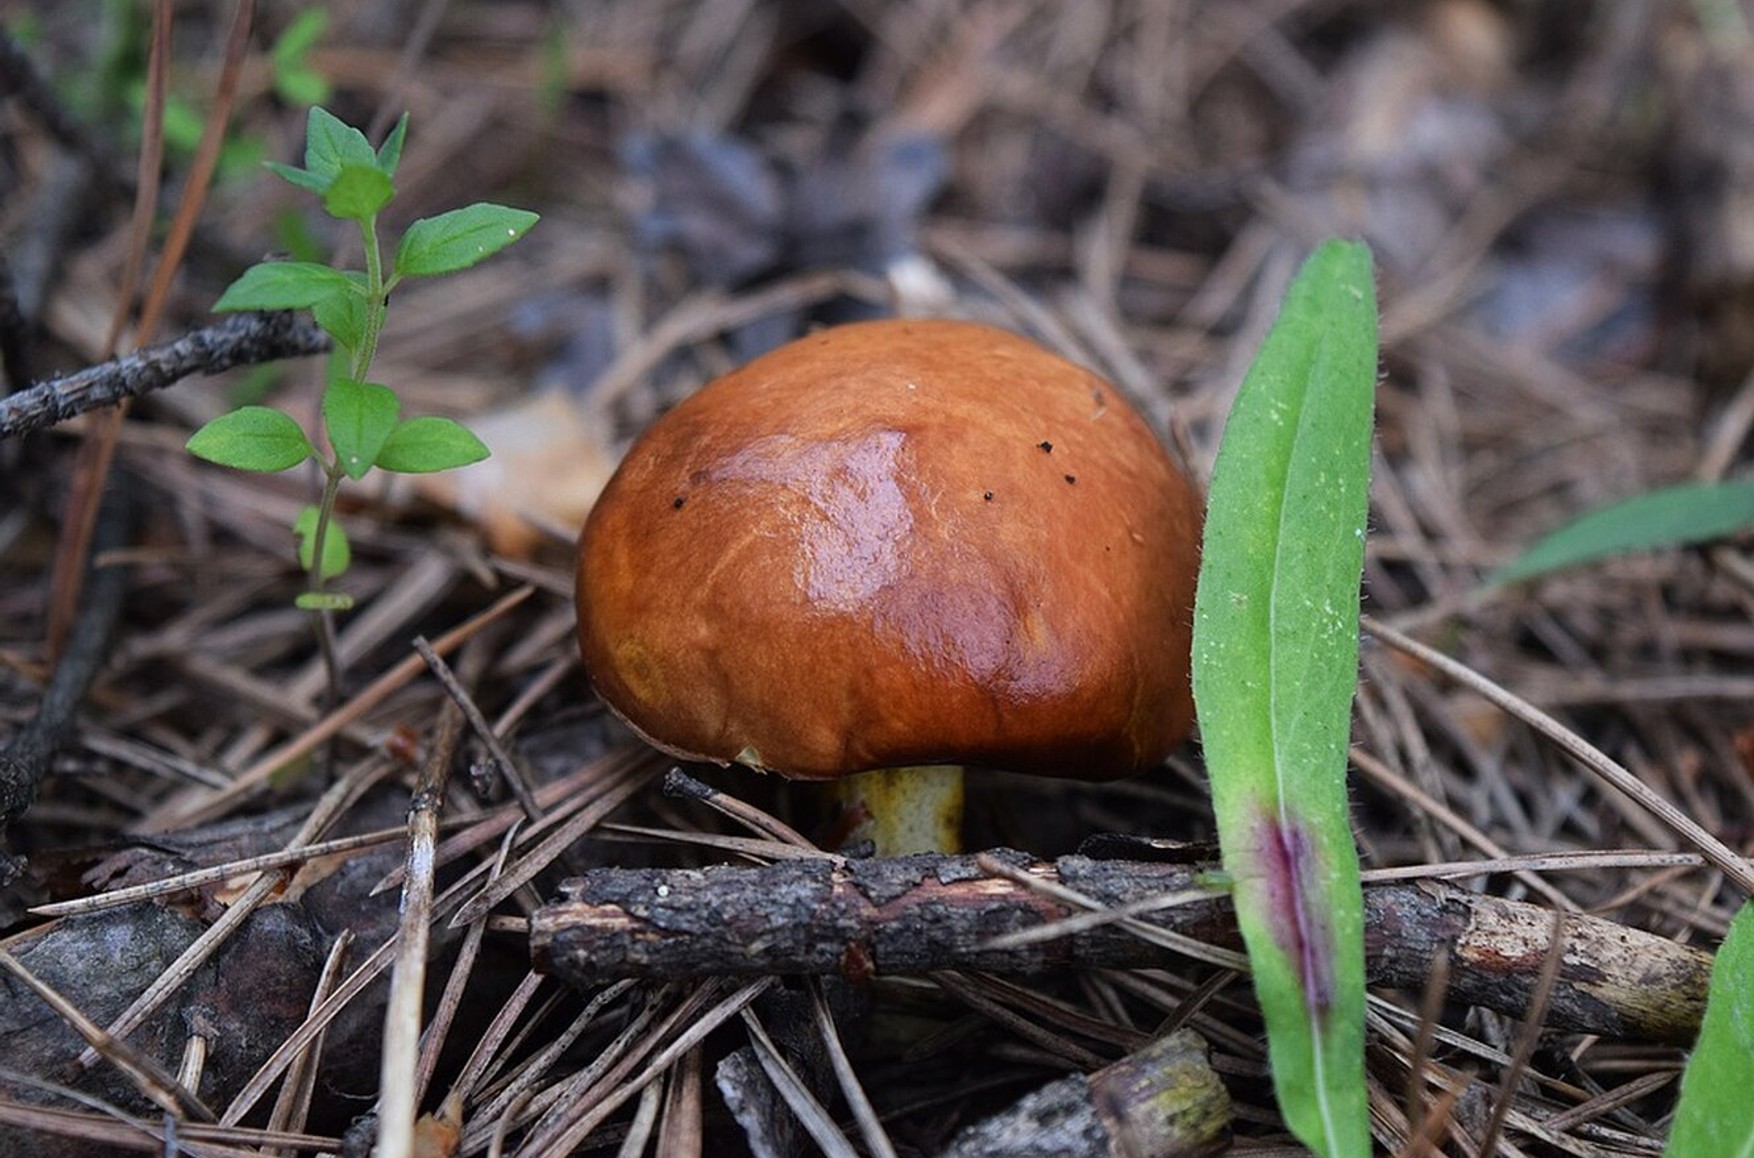 У Росії ввели вимоги до розмірів грибів для збору. Лисички, опеньки і маслюки повинні бути більше 1,5 см в діаметрі